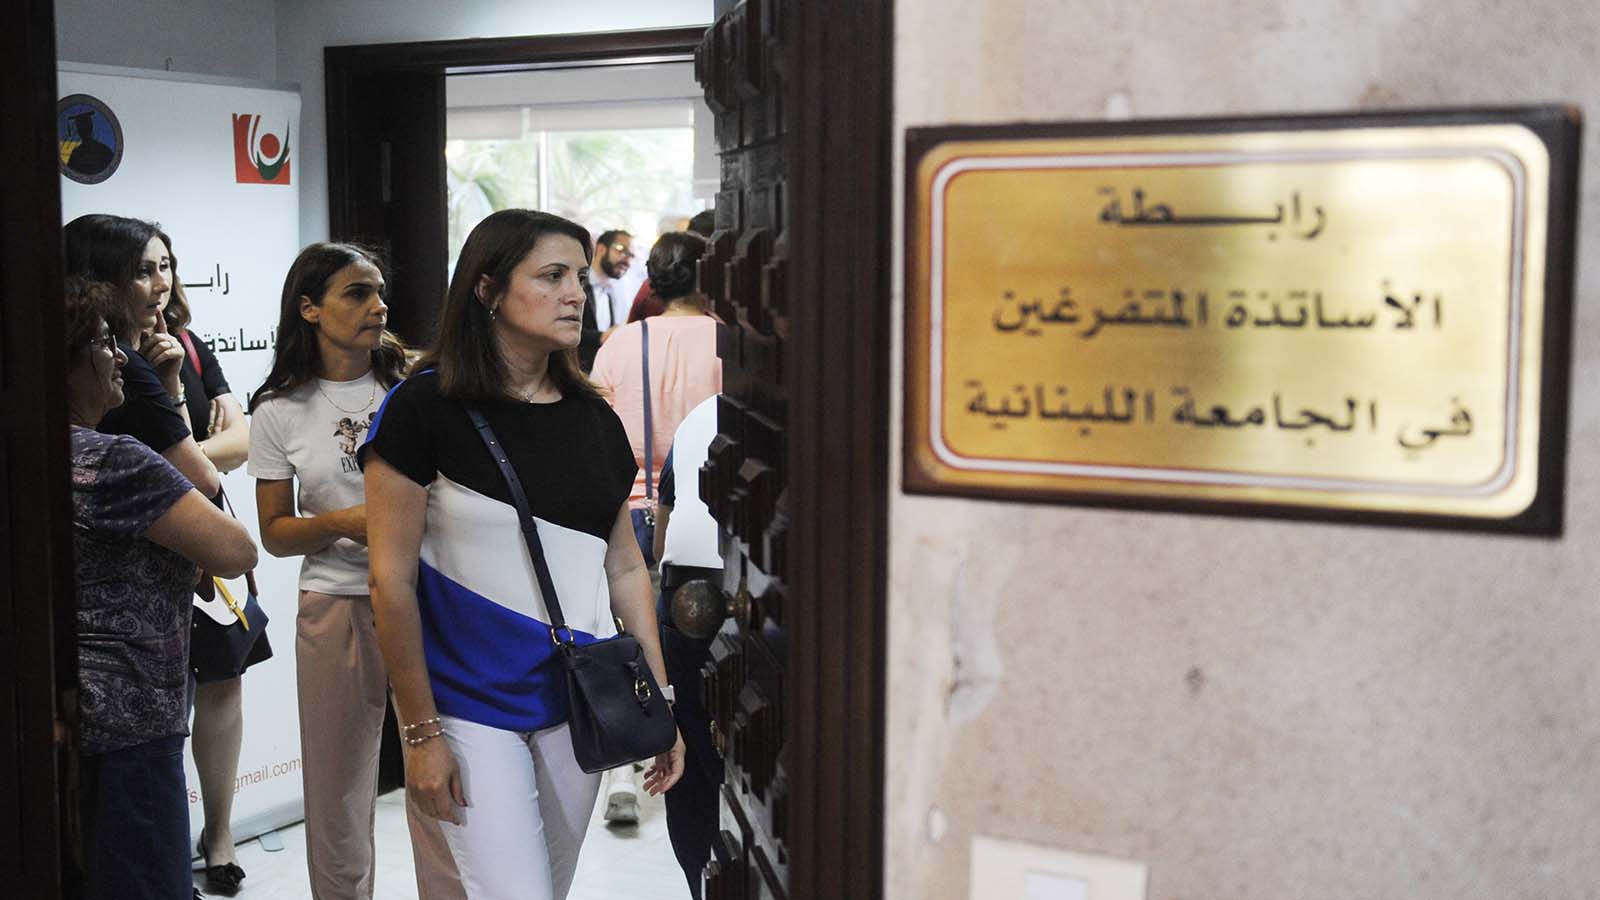 اتفاق الوزير شهيب وأساتذة "اللبنانية" يغيظ حركة أمل